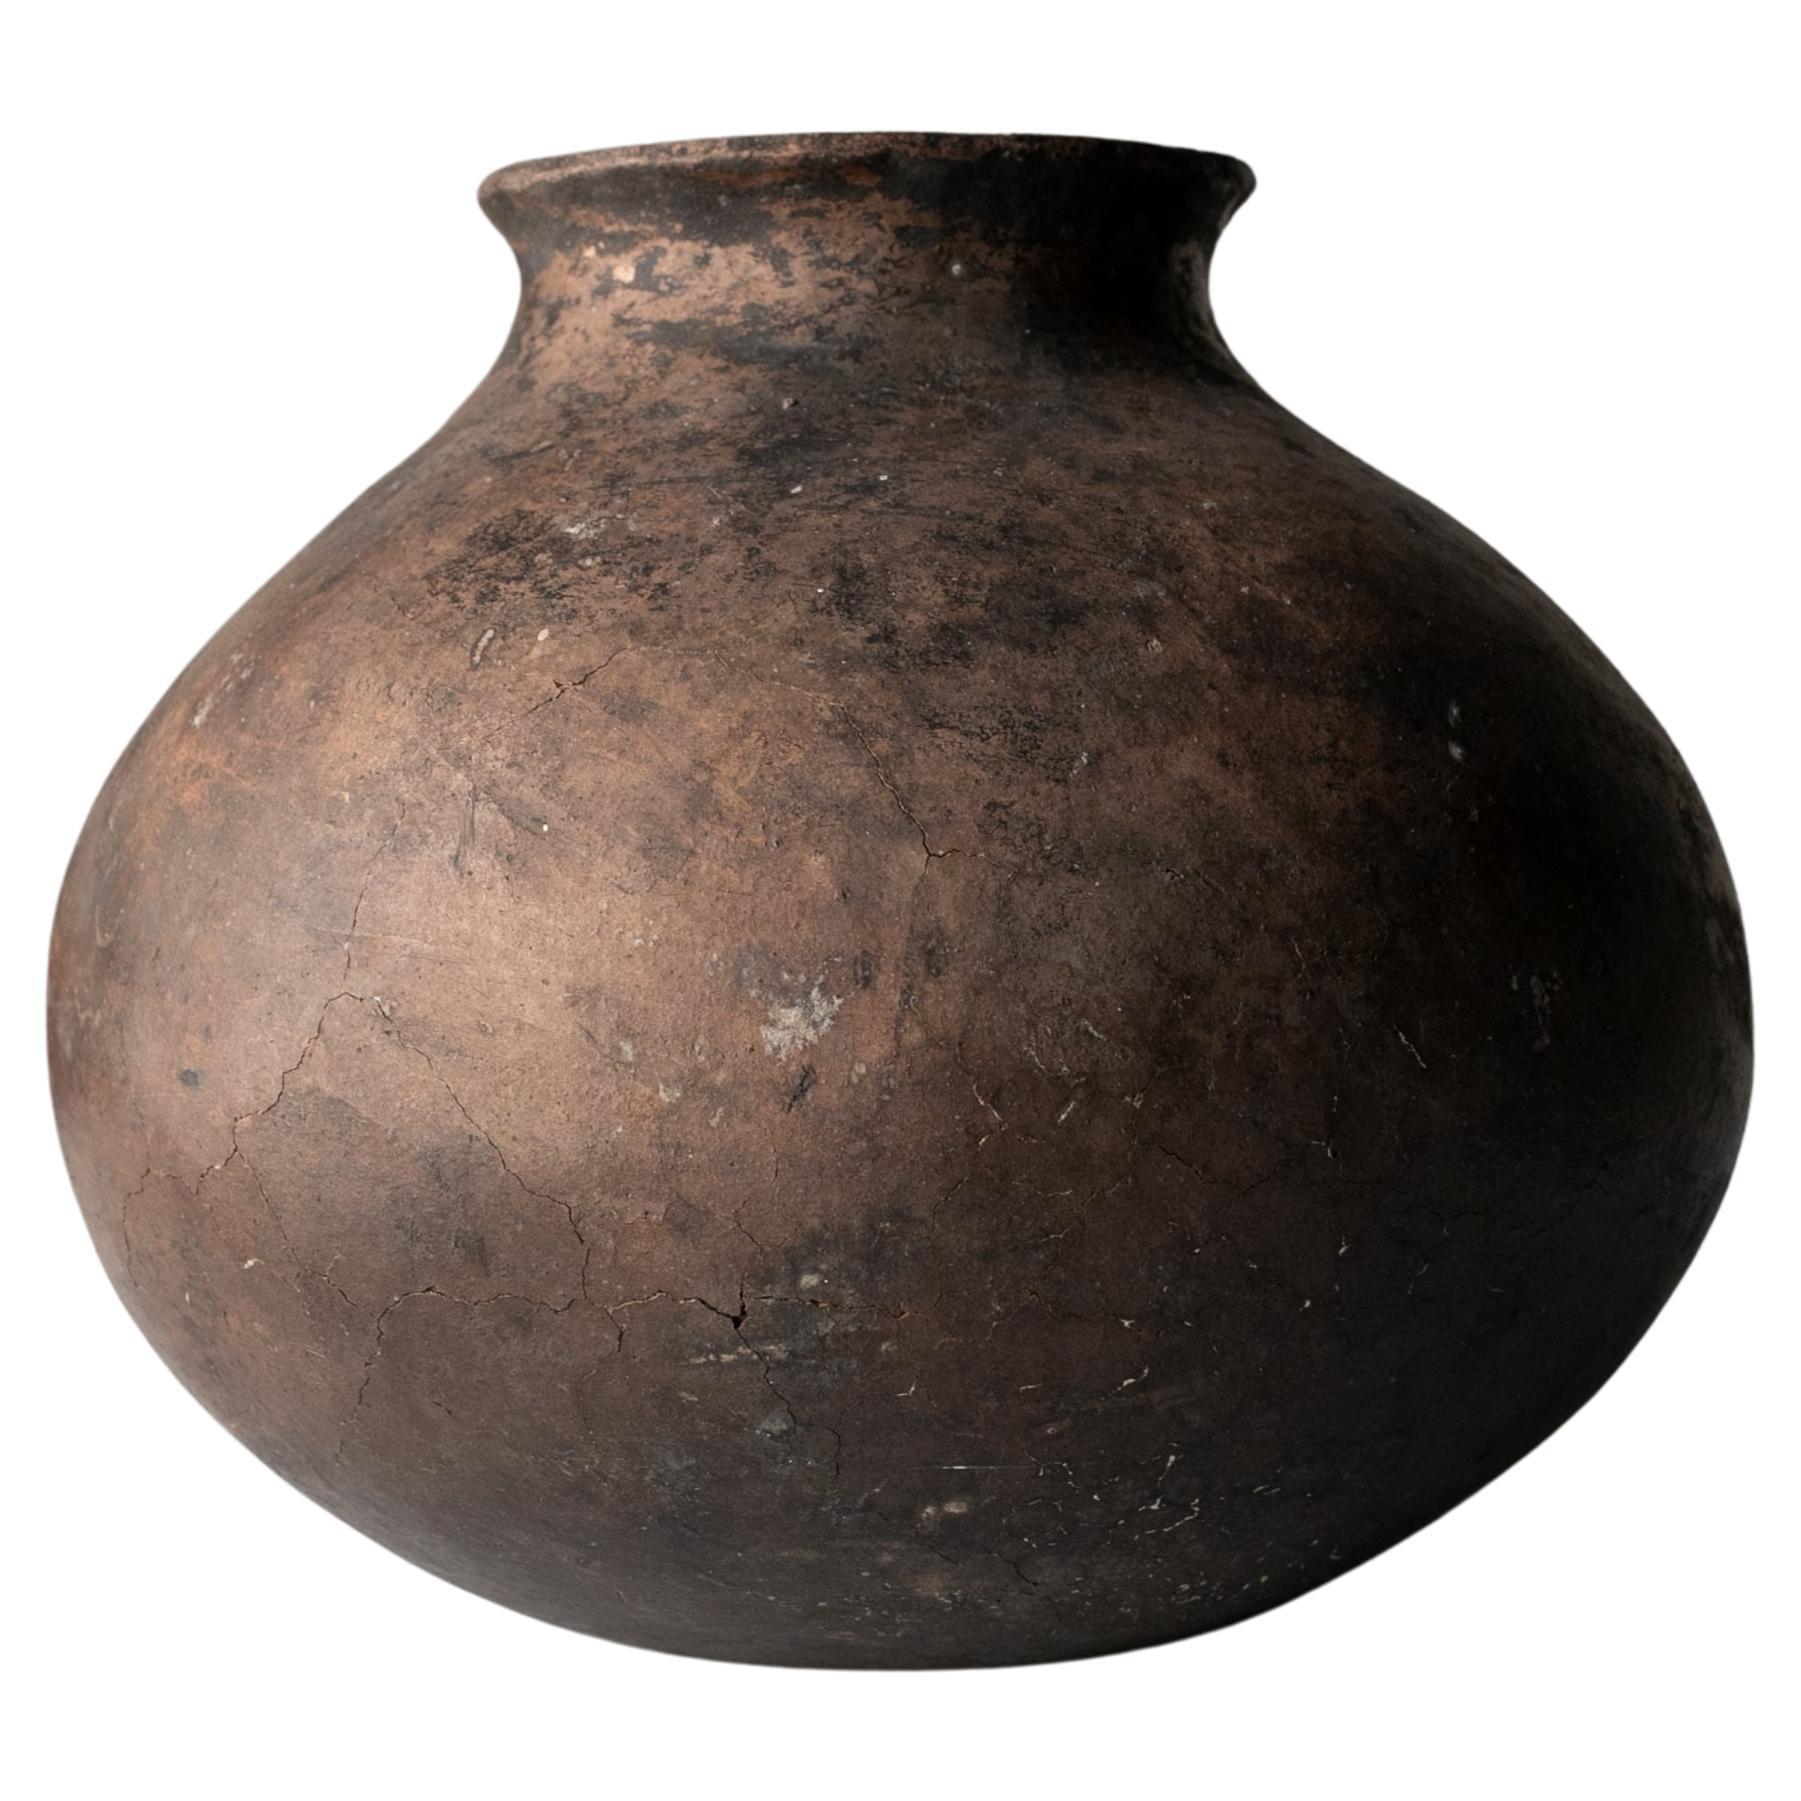 Schön geformte schwarze Steingutvase/16.-17. Jahrhundert/Wabi-sabi-Vase aus Steingut